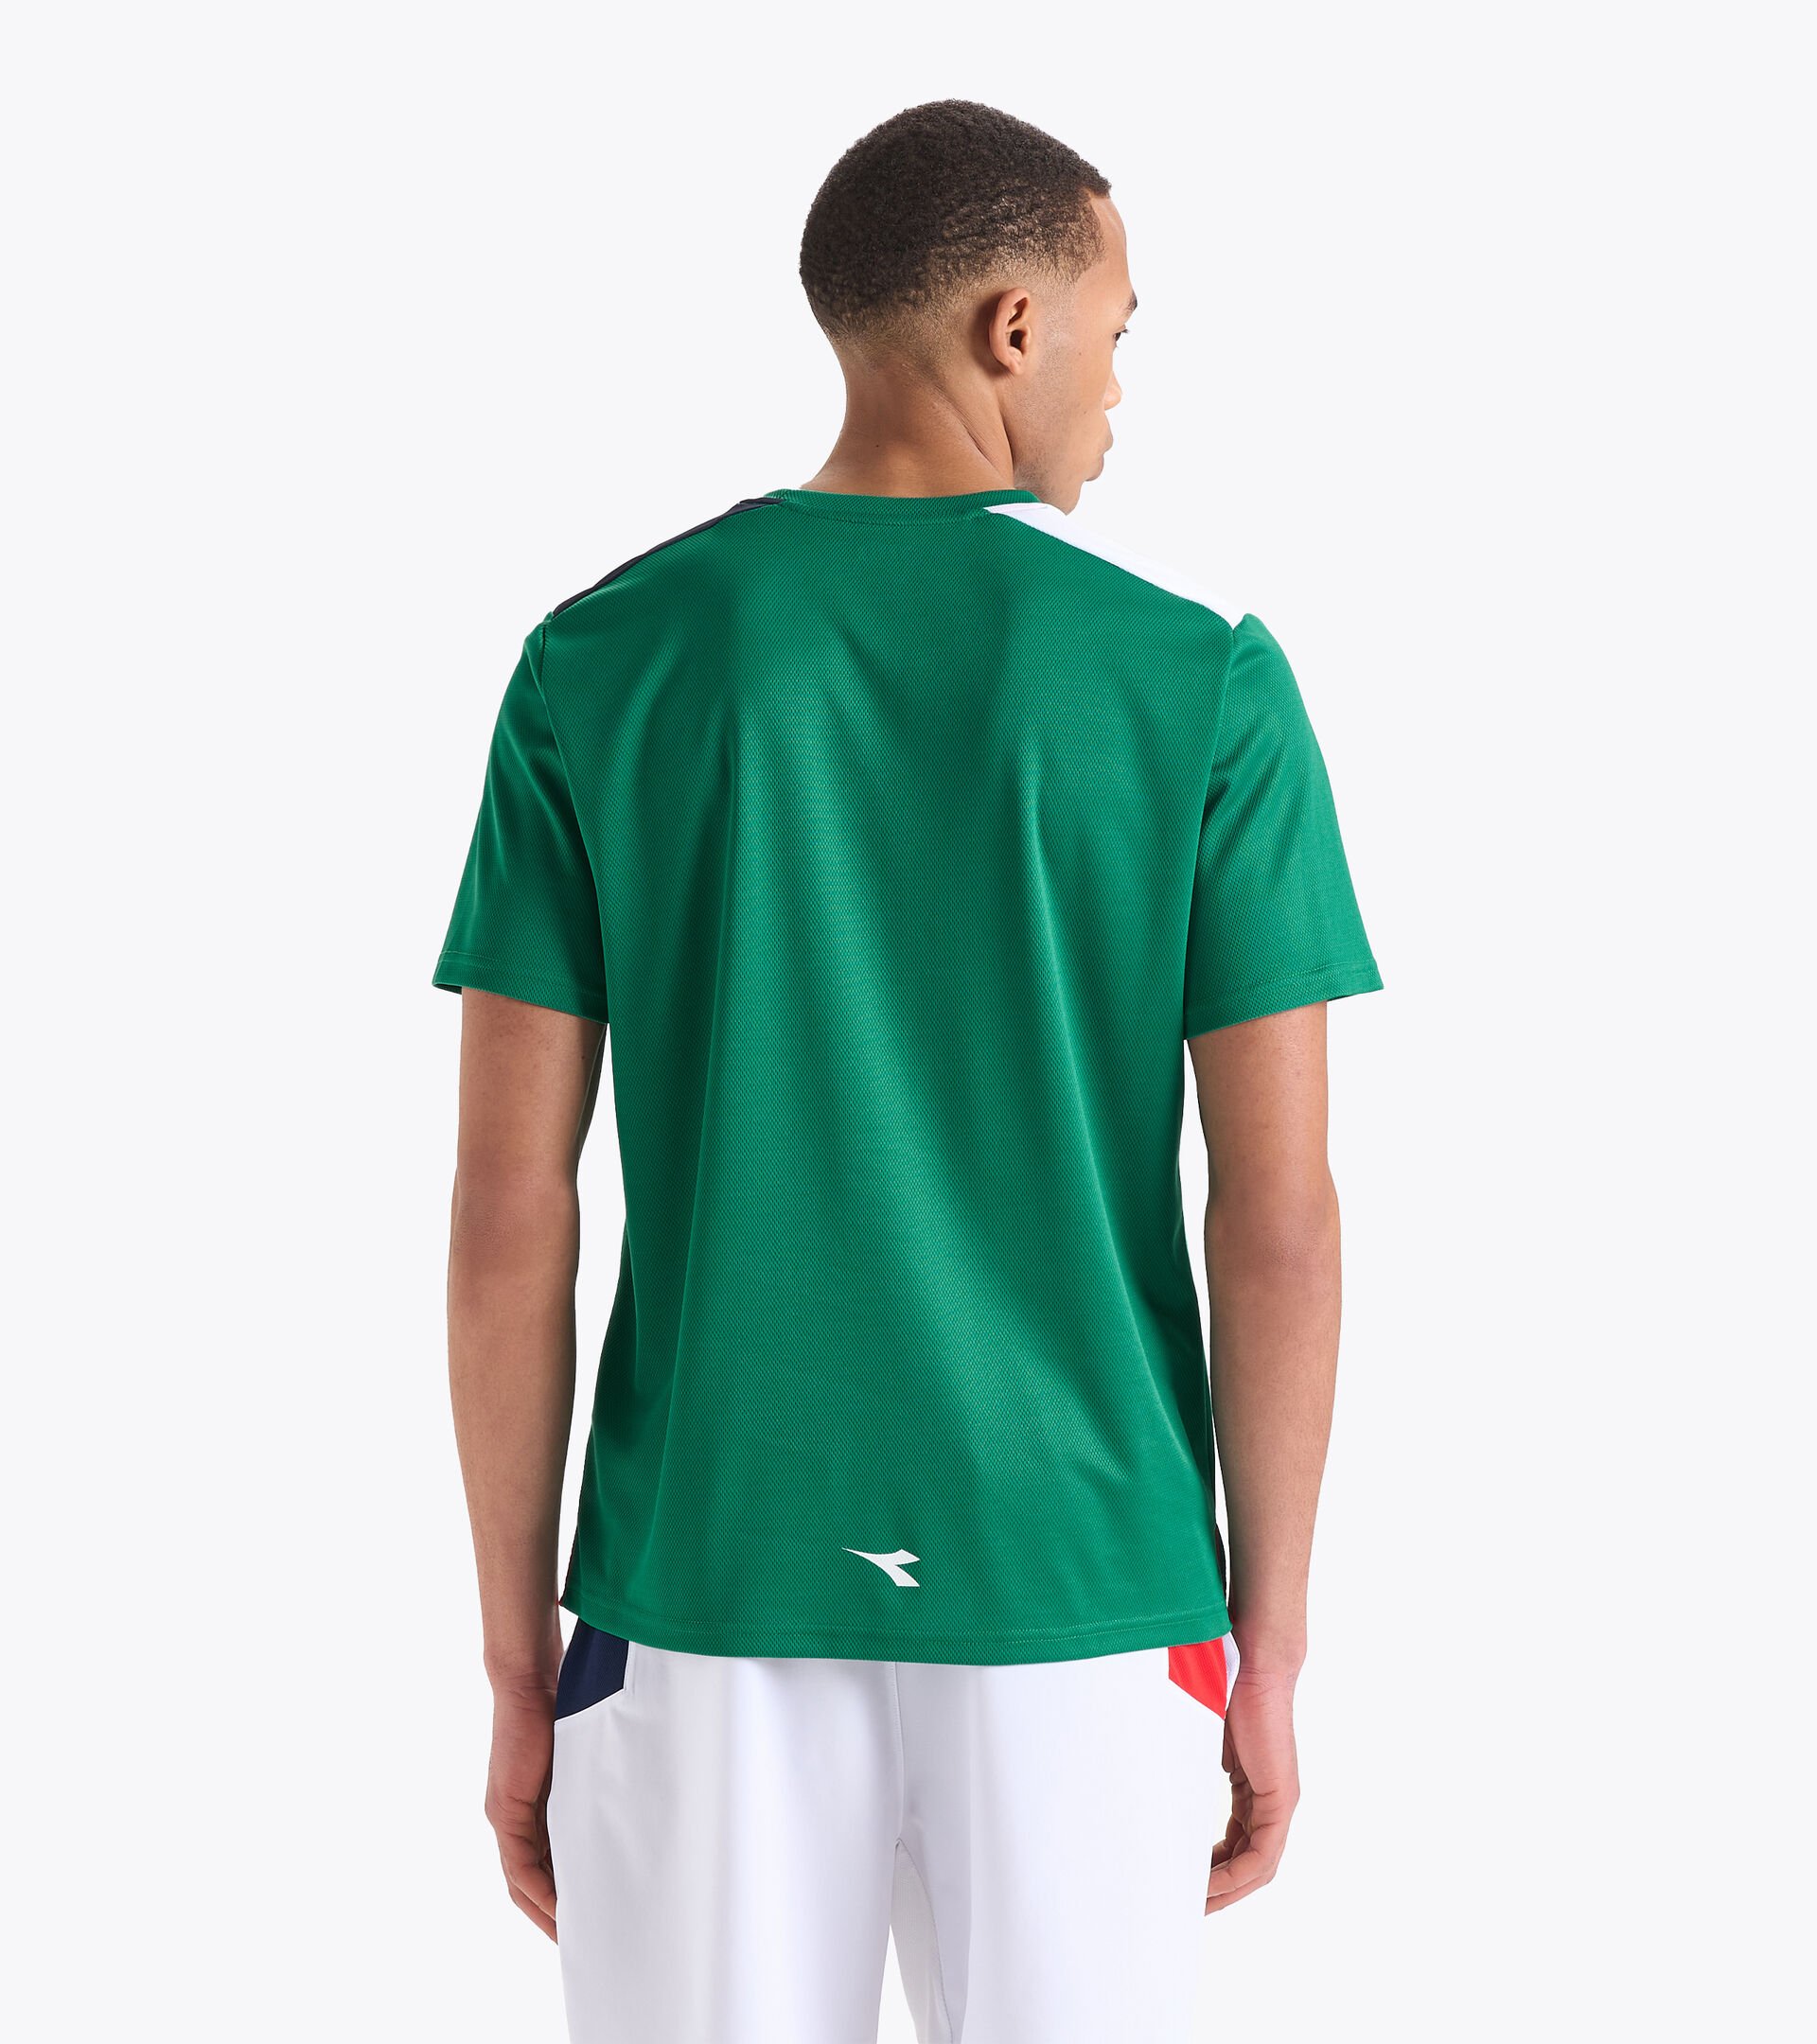 T-shirt de tennis - Homme SS CORE T-SHIRT T VERT BLEU OUTREMER - Diadora